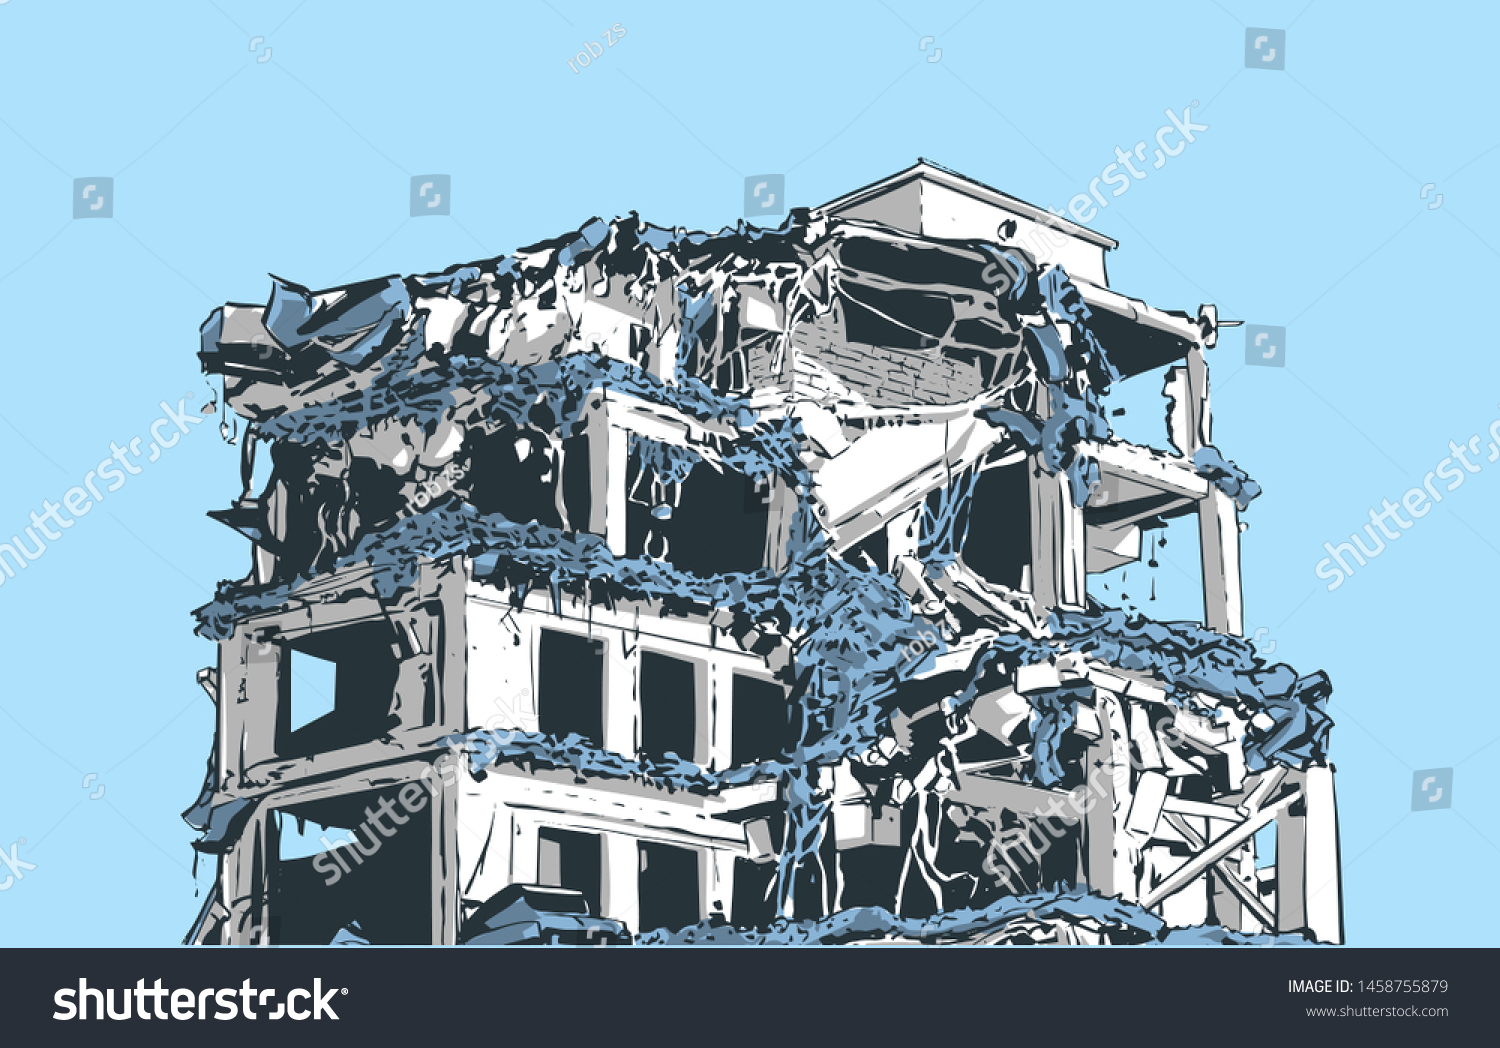 地震 自然災害 爆発 火災による倒壊した建物のイラスト のベクター画像素材 ロイヤリティフリー